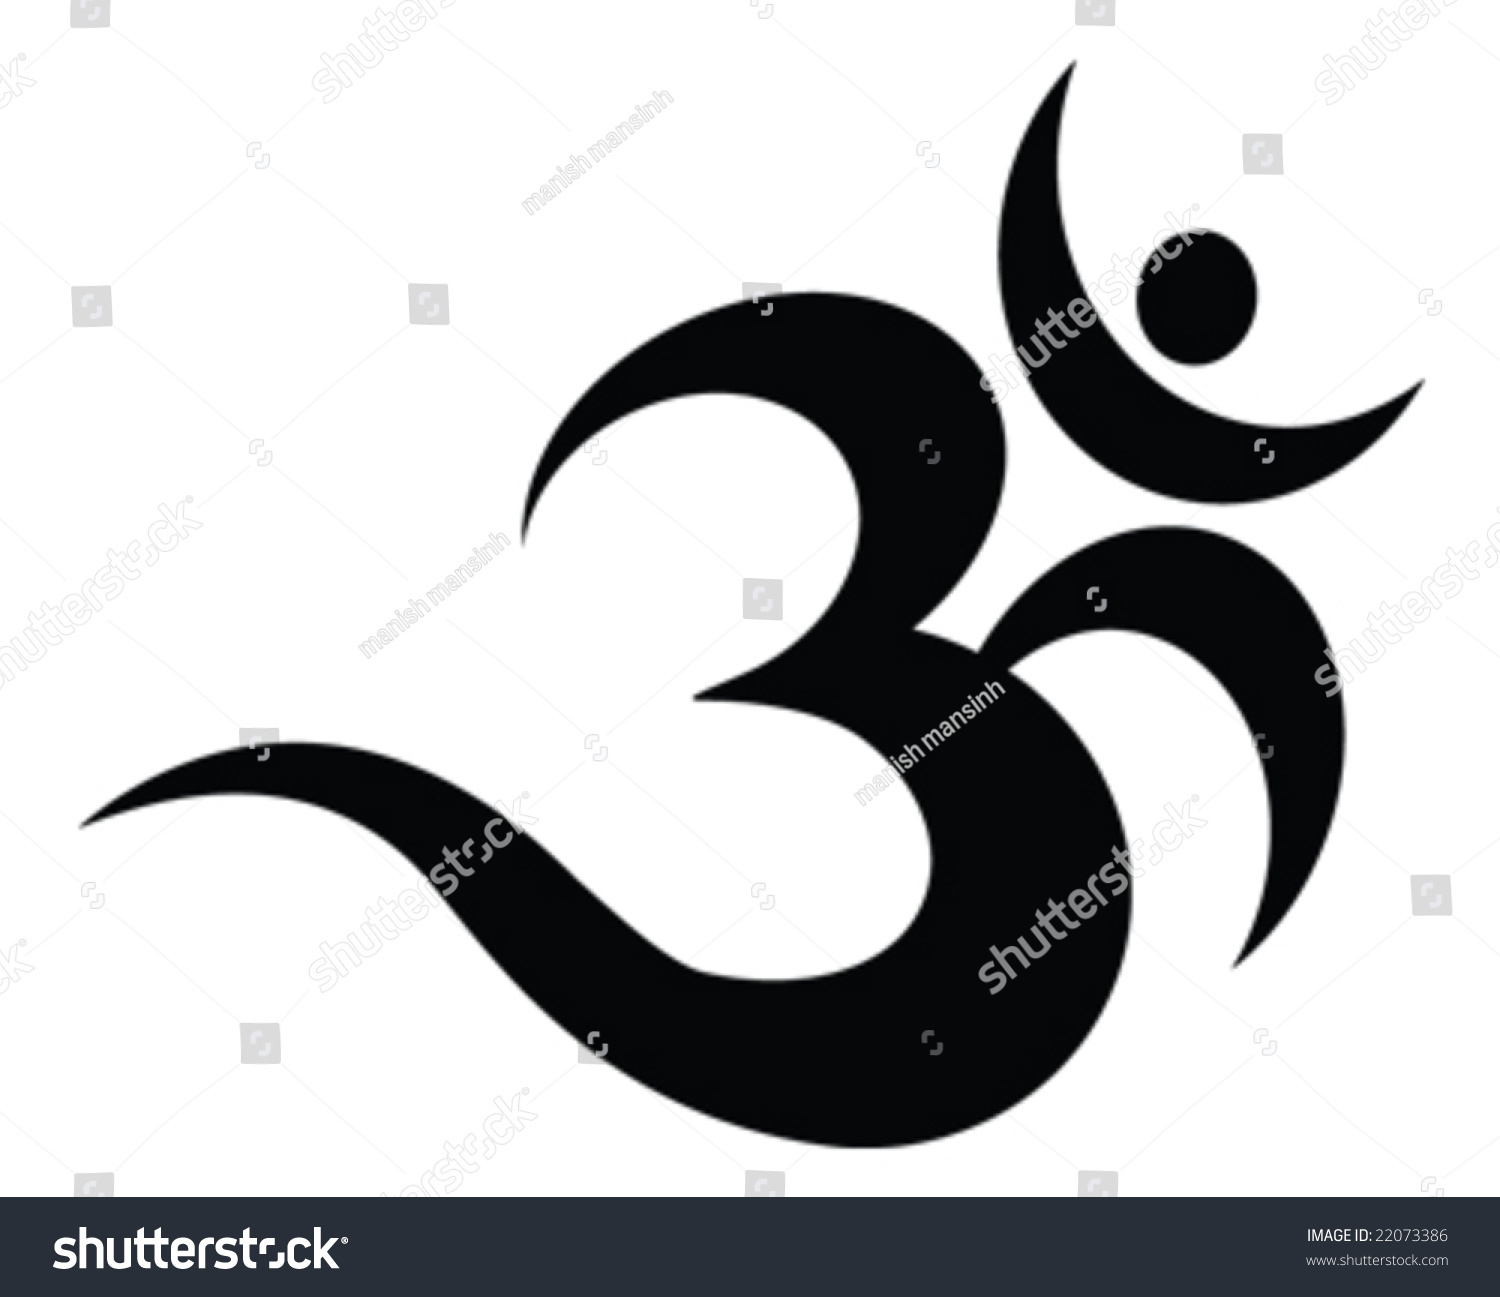 aum symbol tattoo designs